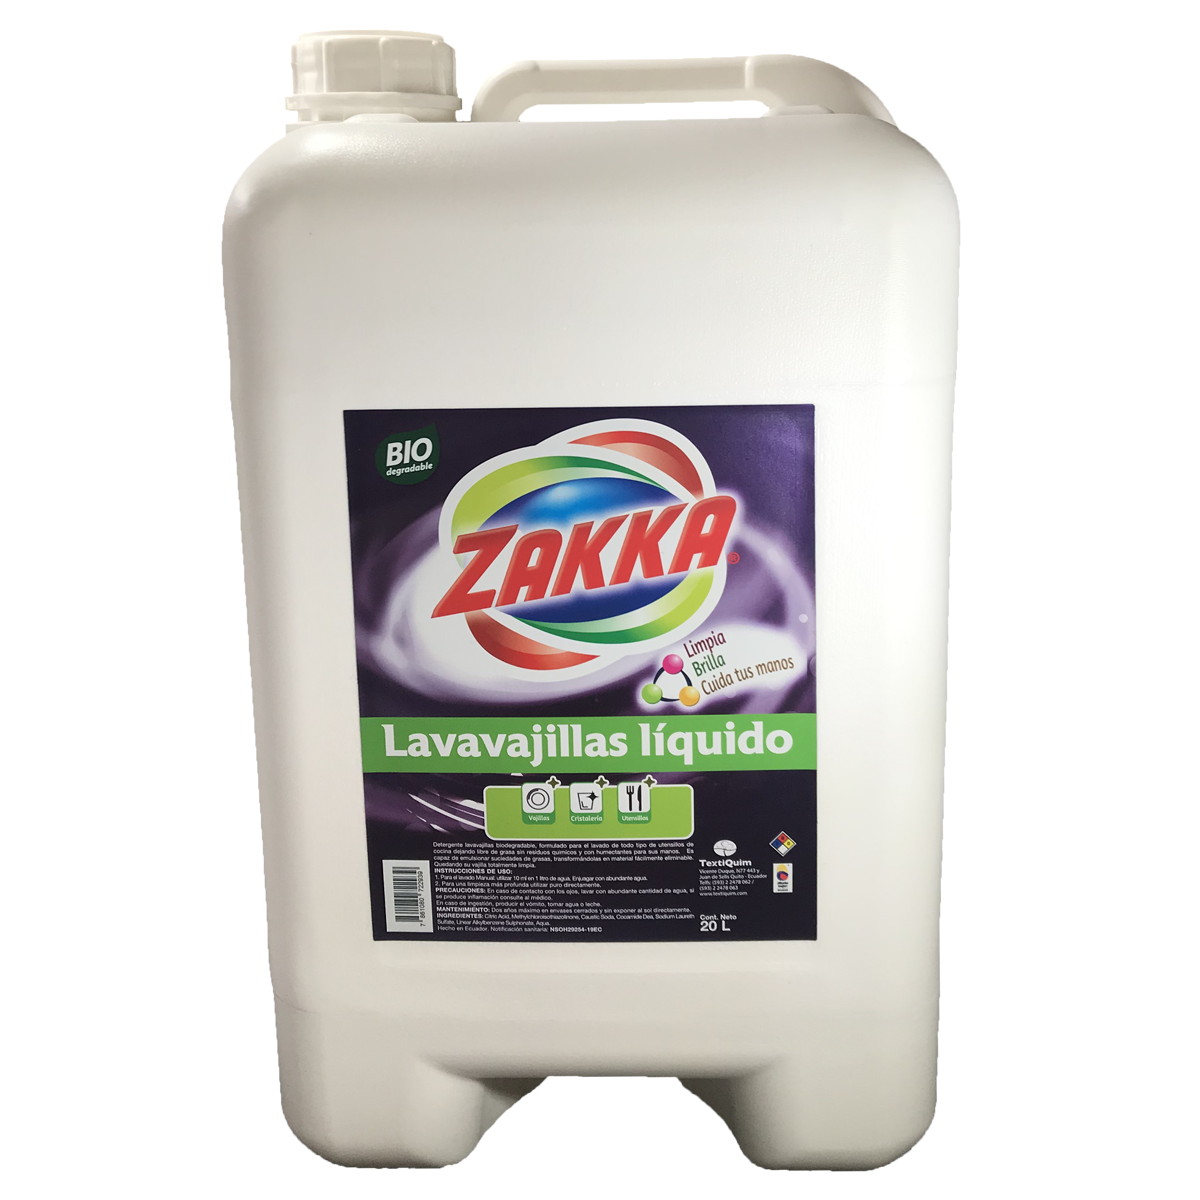 Lavavajillas liquido 20 litros – Organic Store